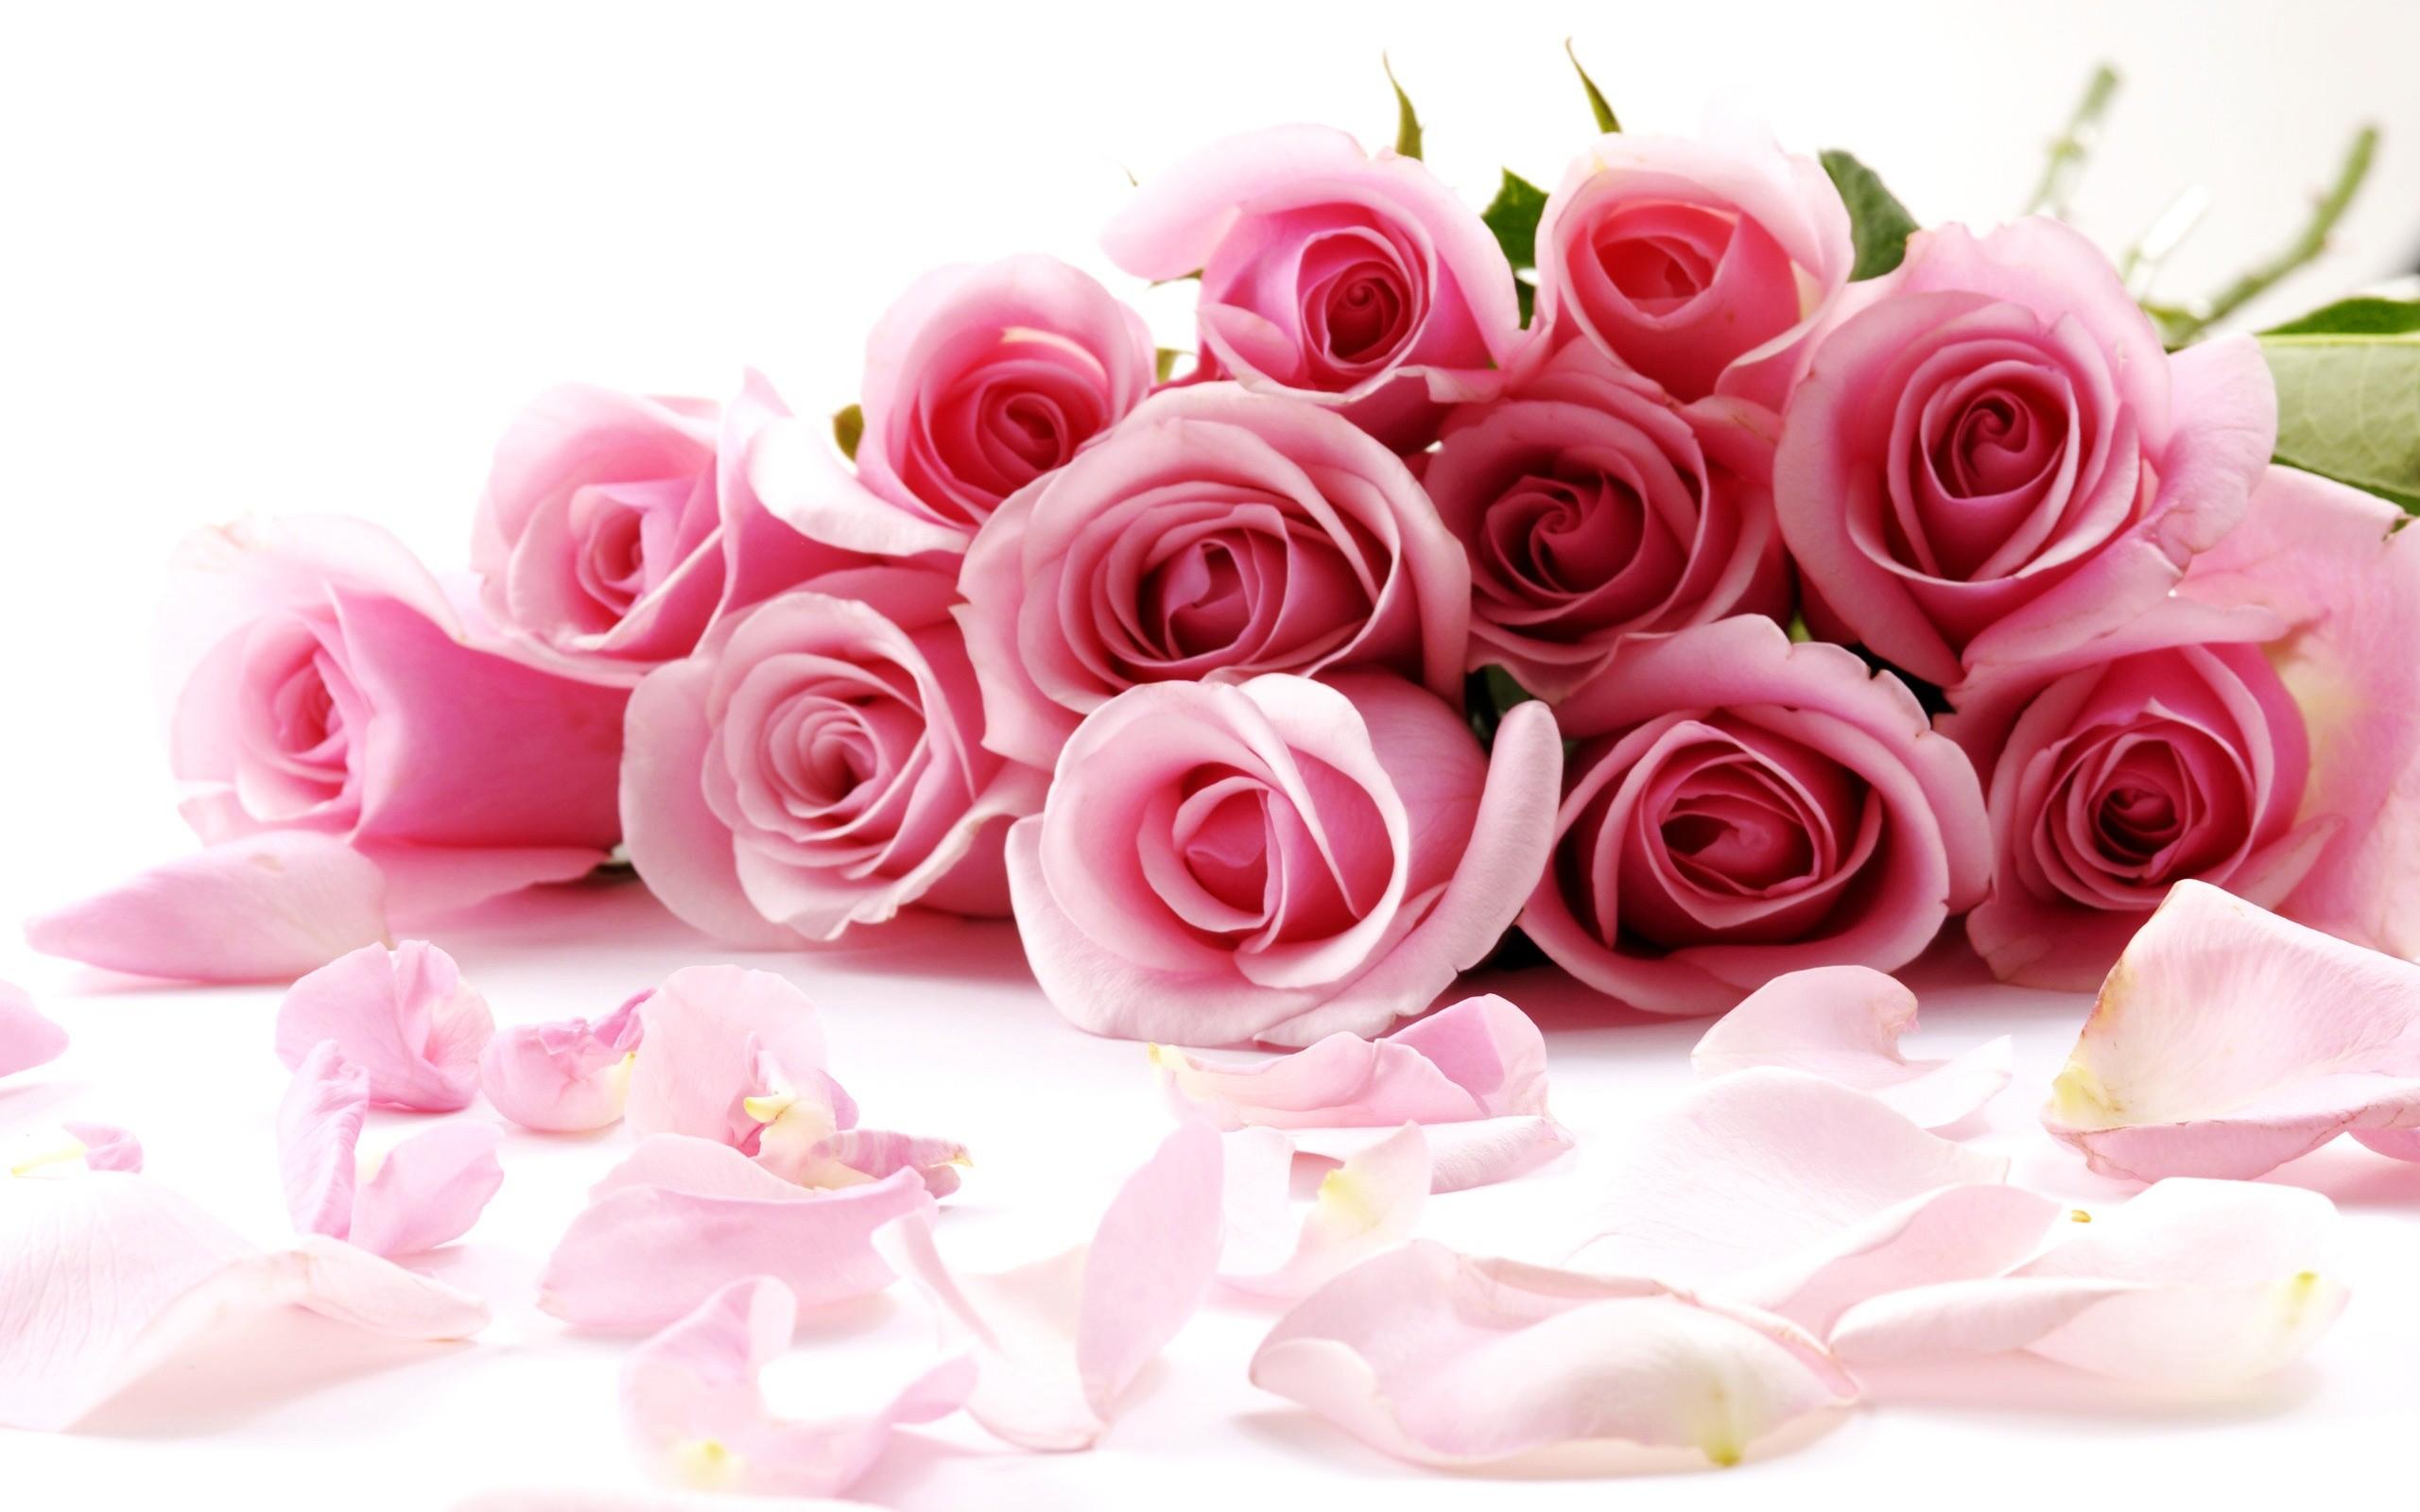 Pink Rose Flower Image Picture Desktop Wallpaper High Definition